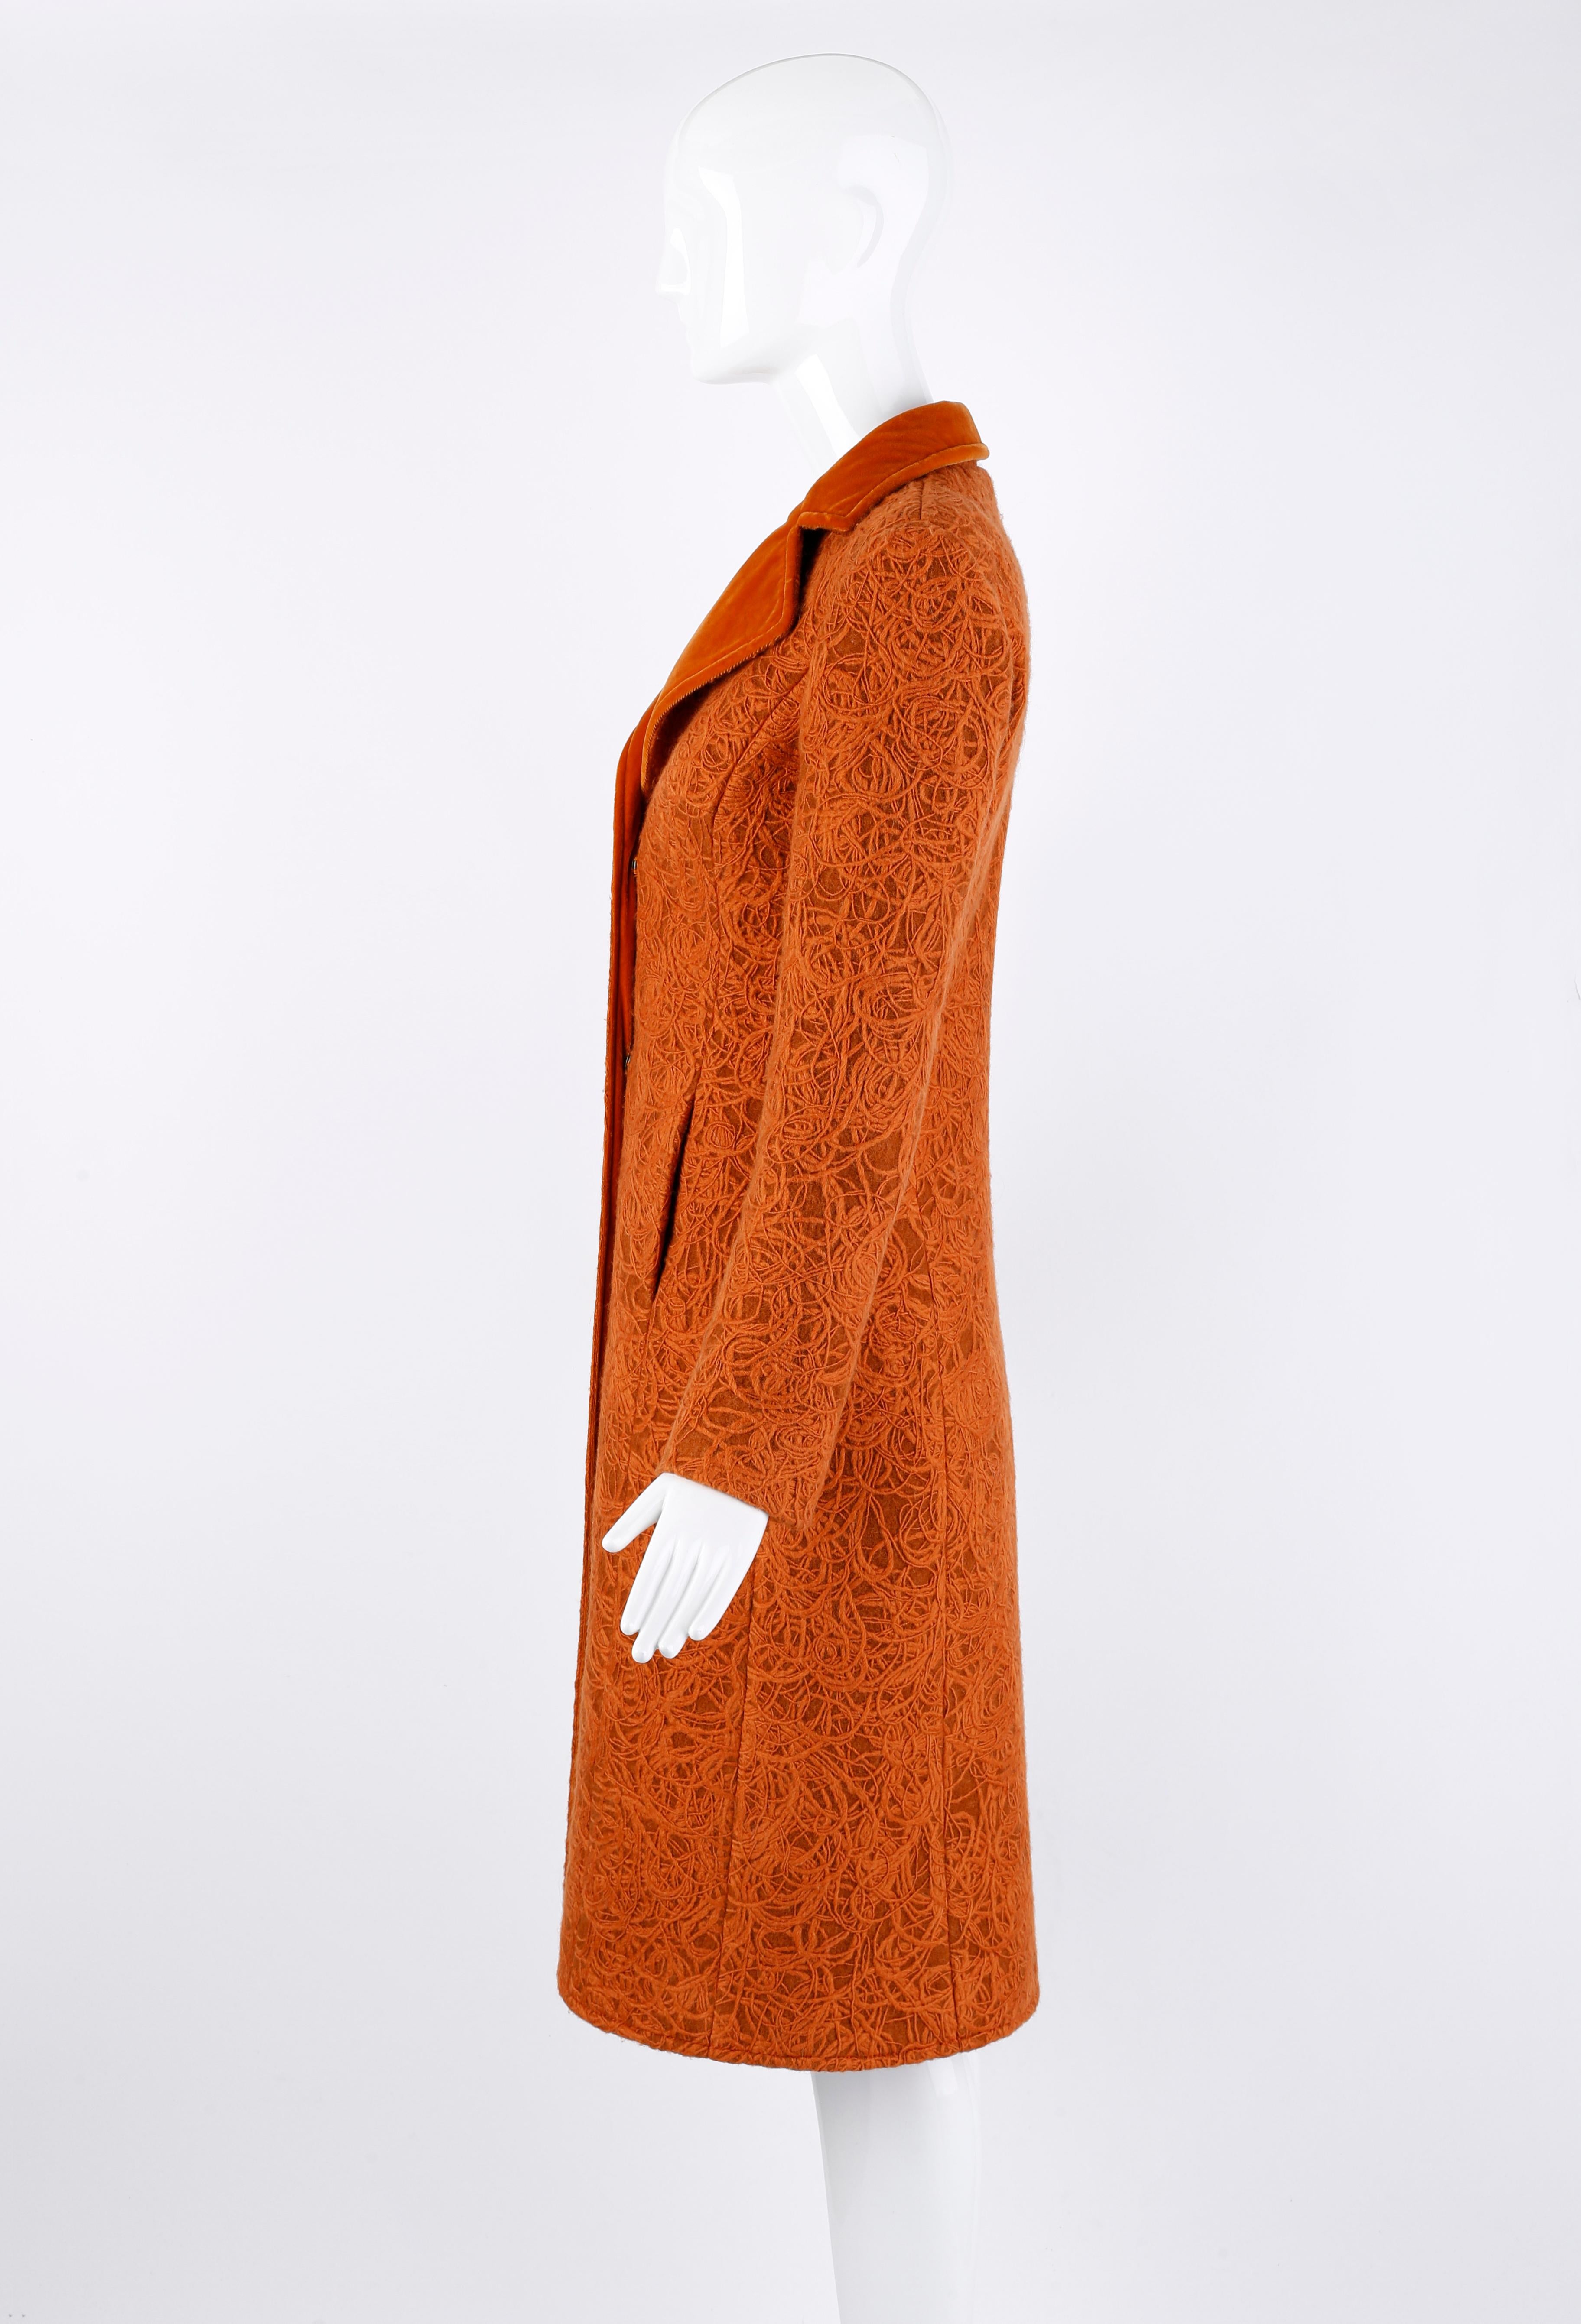 Alexander McQueen c.1996 Rust Orange Textured Wool Tailored Dress Jacket Coat  For Sale 1